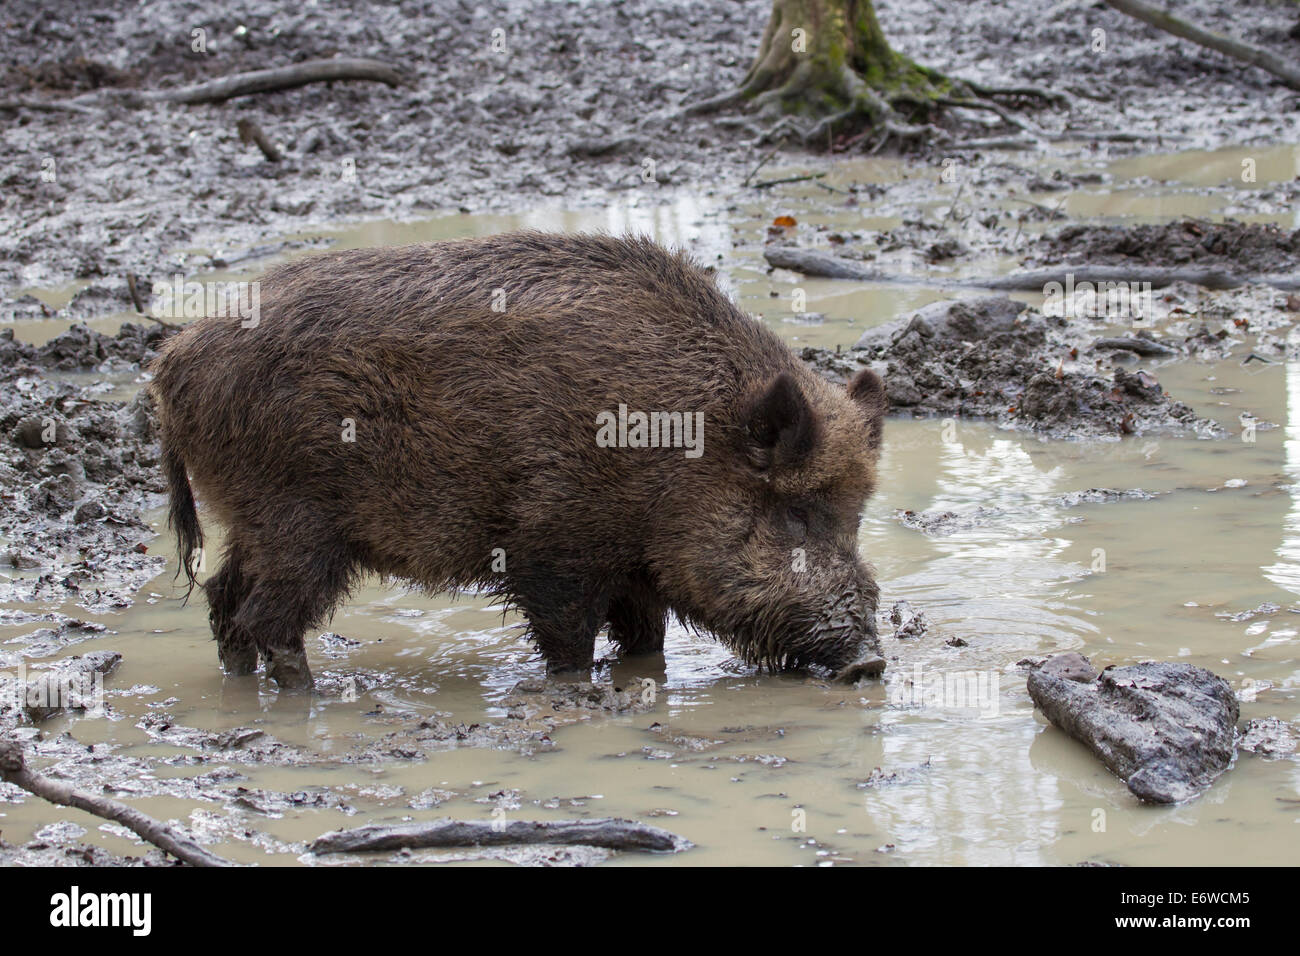 Wild boar sus scrofa wildschwein wuehlen dig mud Stock Photo